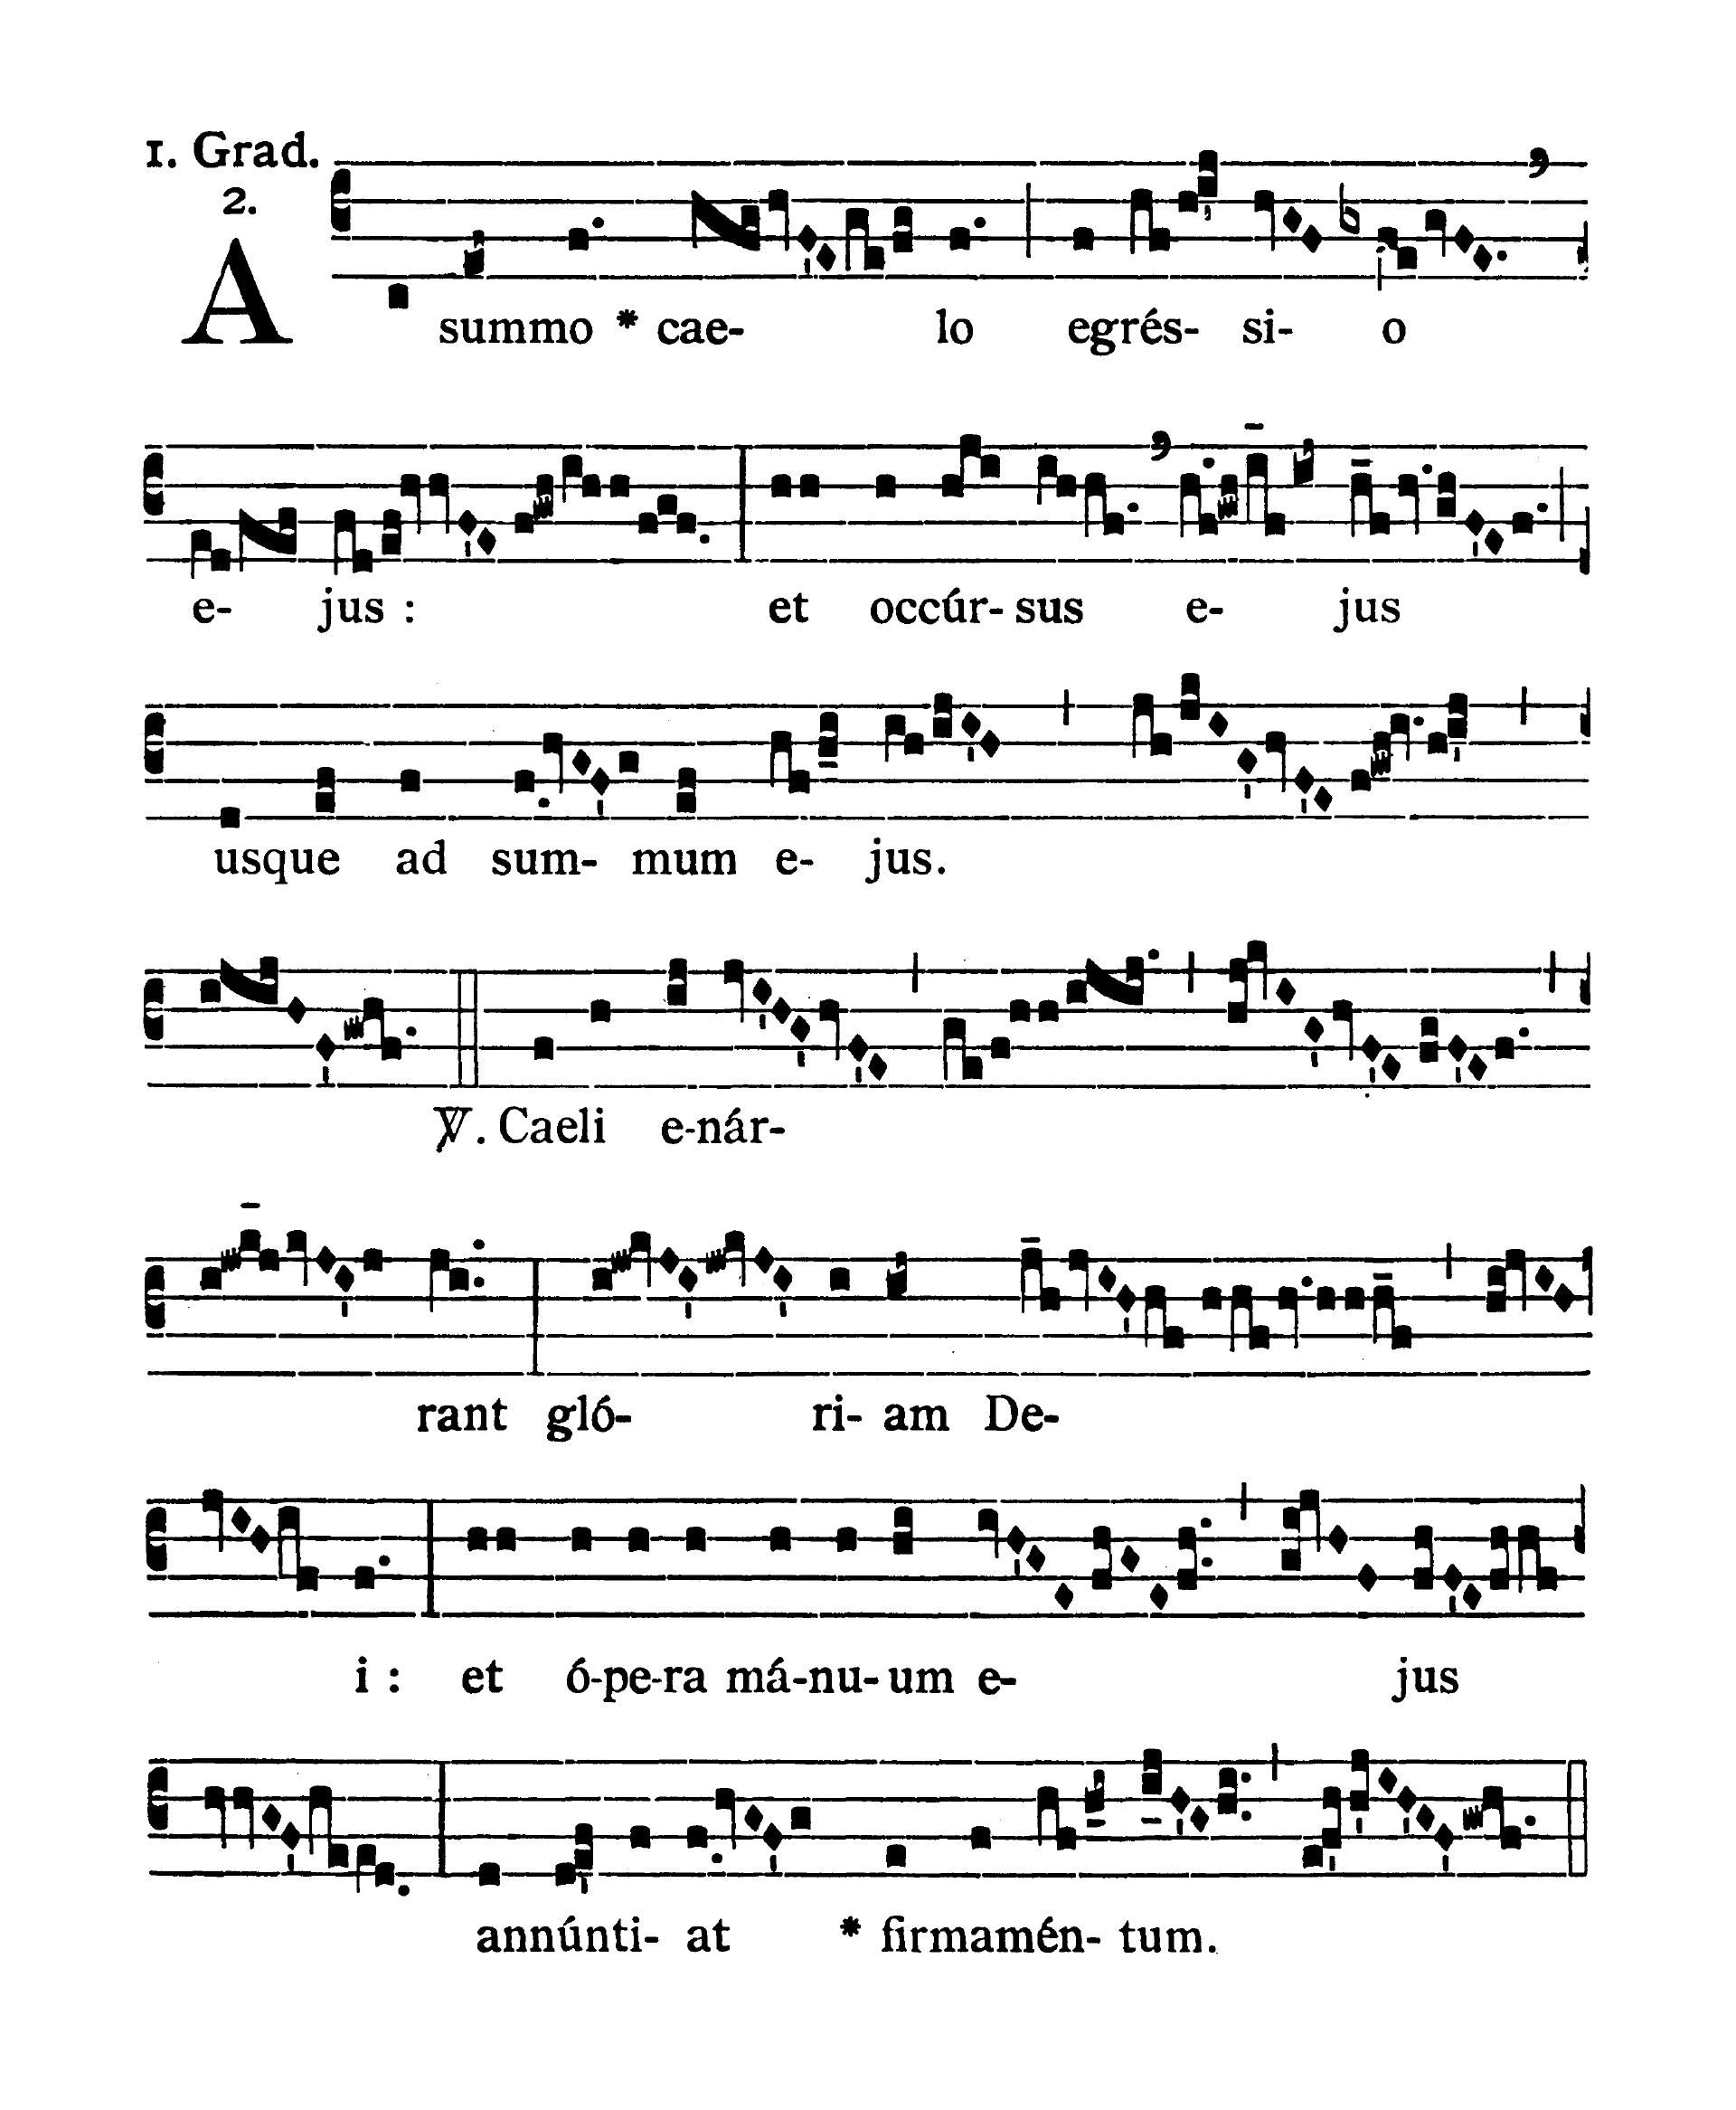 Sabbato Quatuor Temporum Adventus - Graduale (A summo caelo)